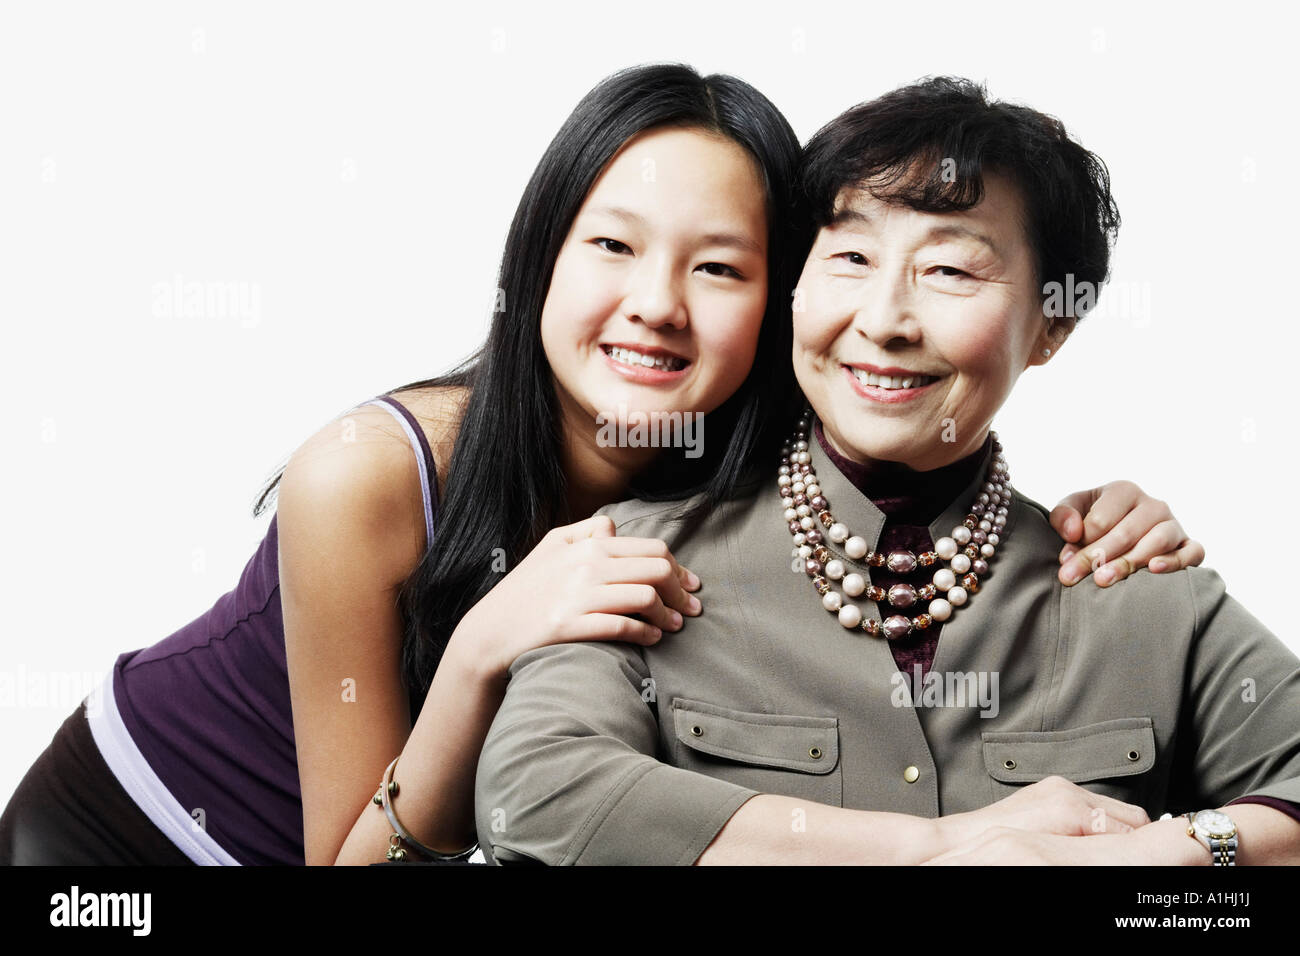 Retrato de una abuela y su nieta sonriendo Foto de stock